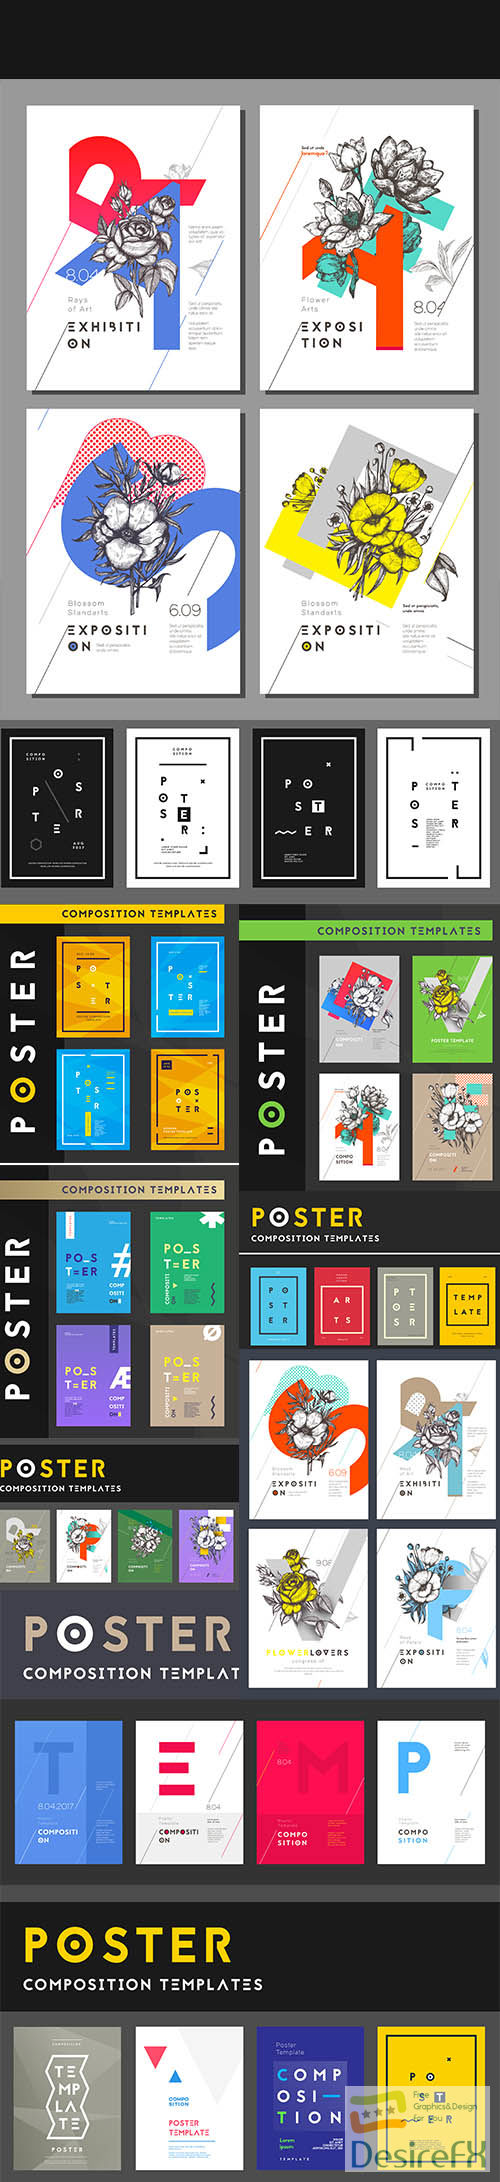 Set poster templates modern clean design vector illustration